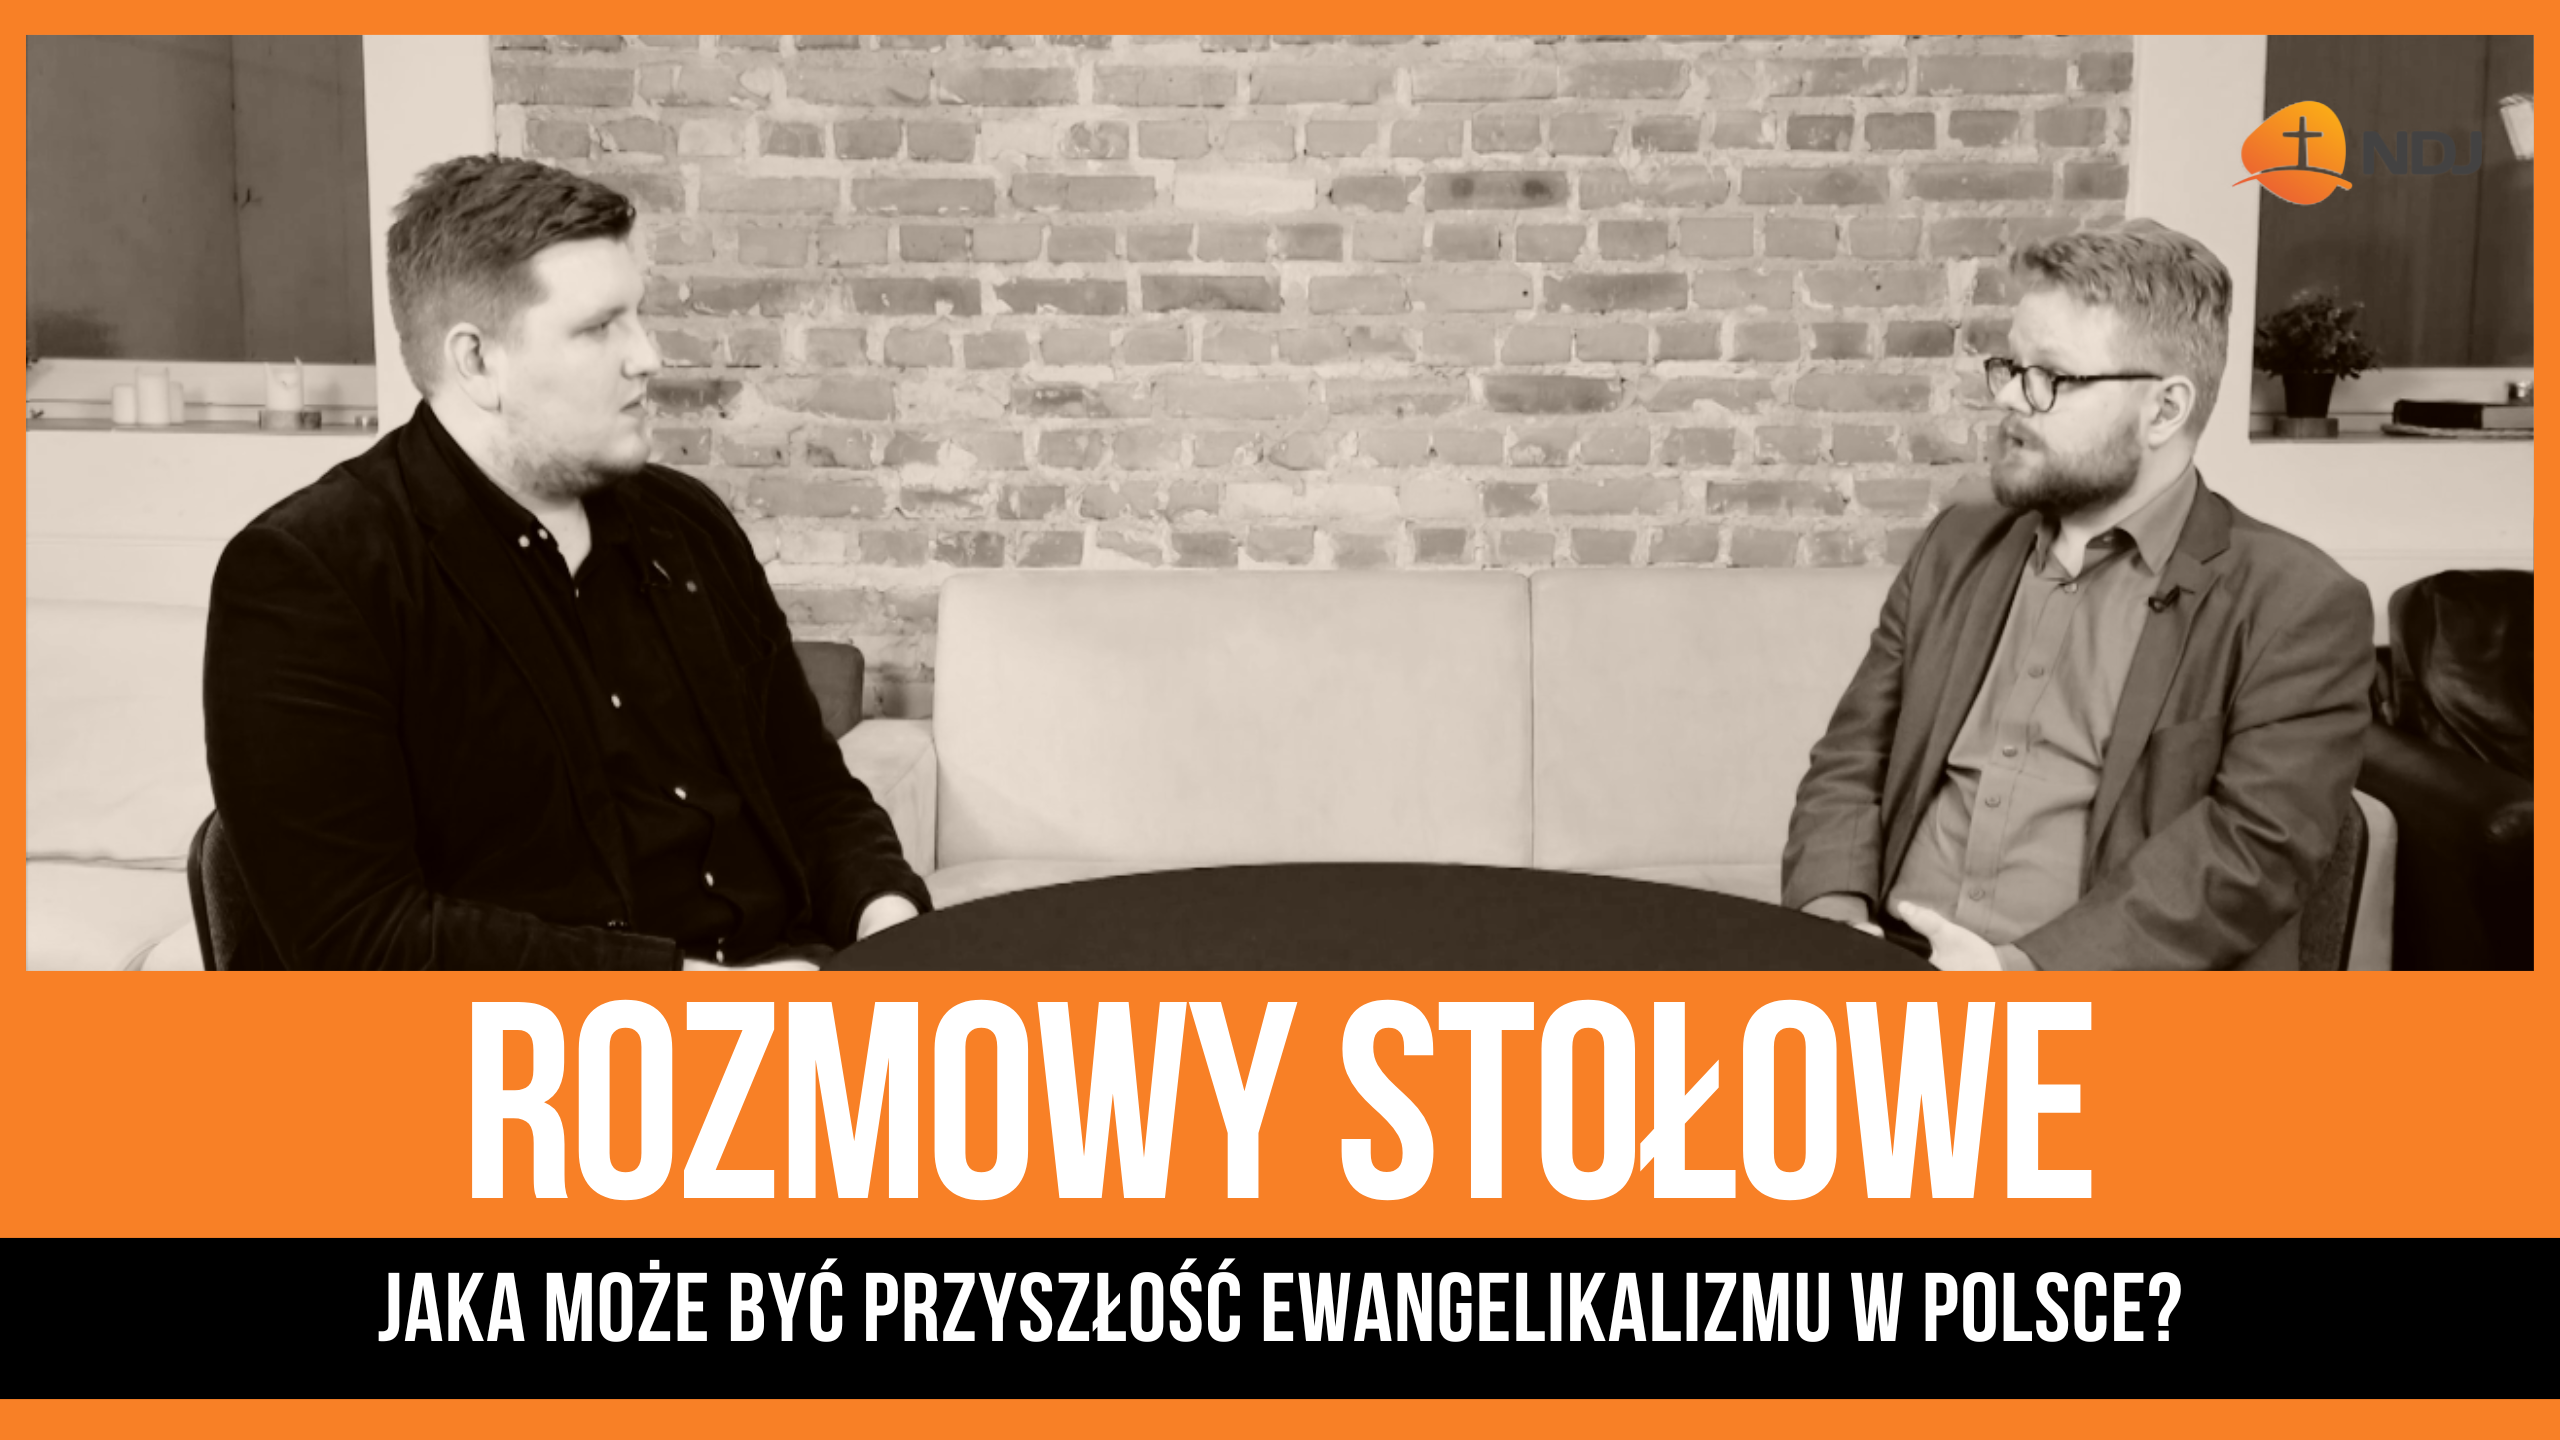 Jaka może być przyszłość ewangelikalizmu w Polsce?